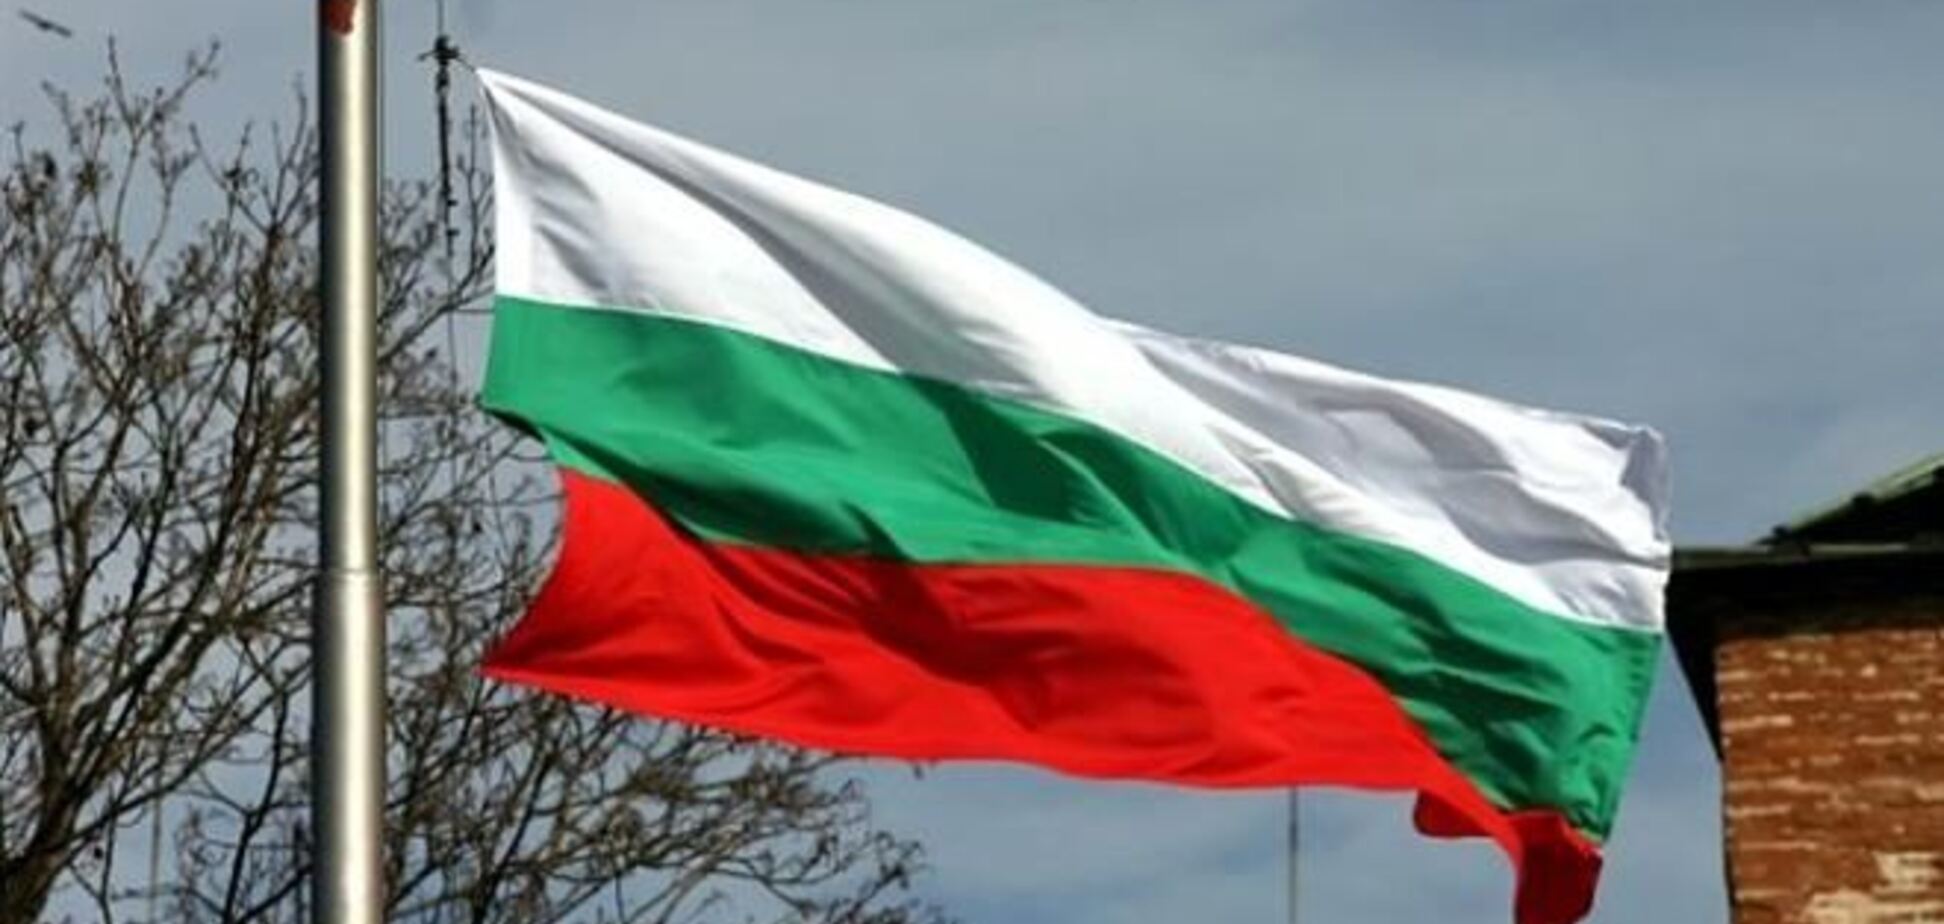 Болгария отгородится от Турции стеной